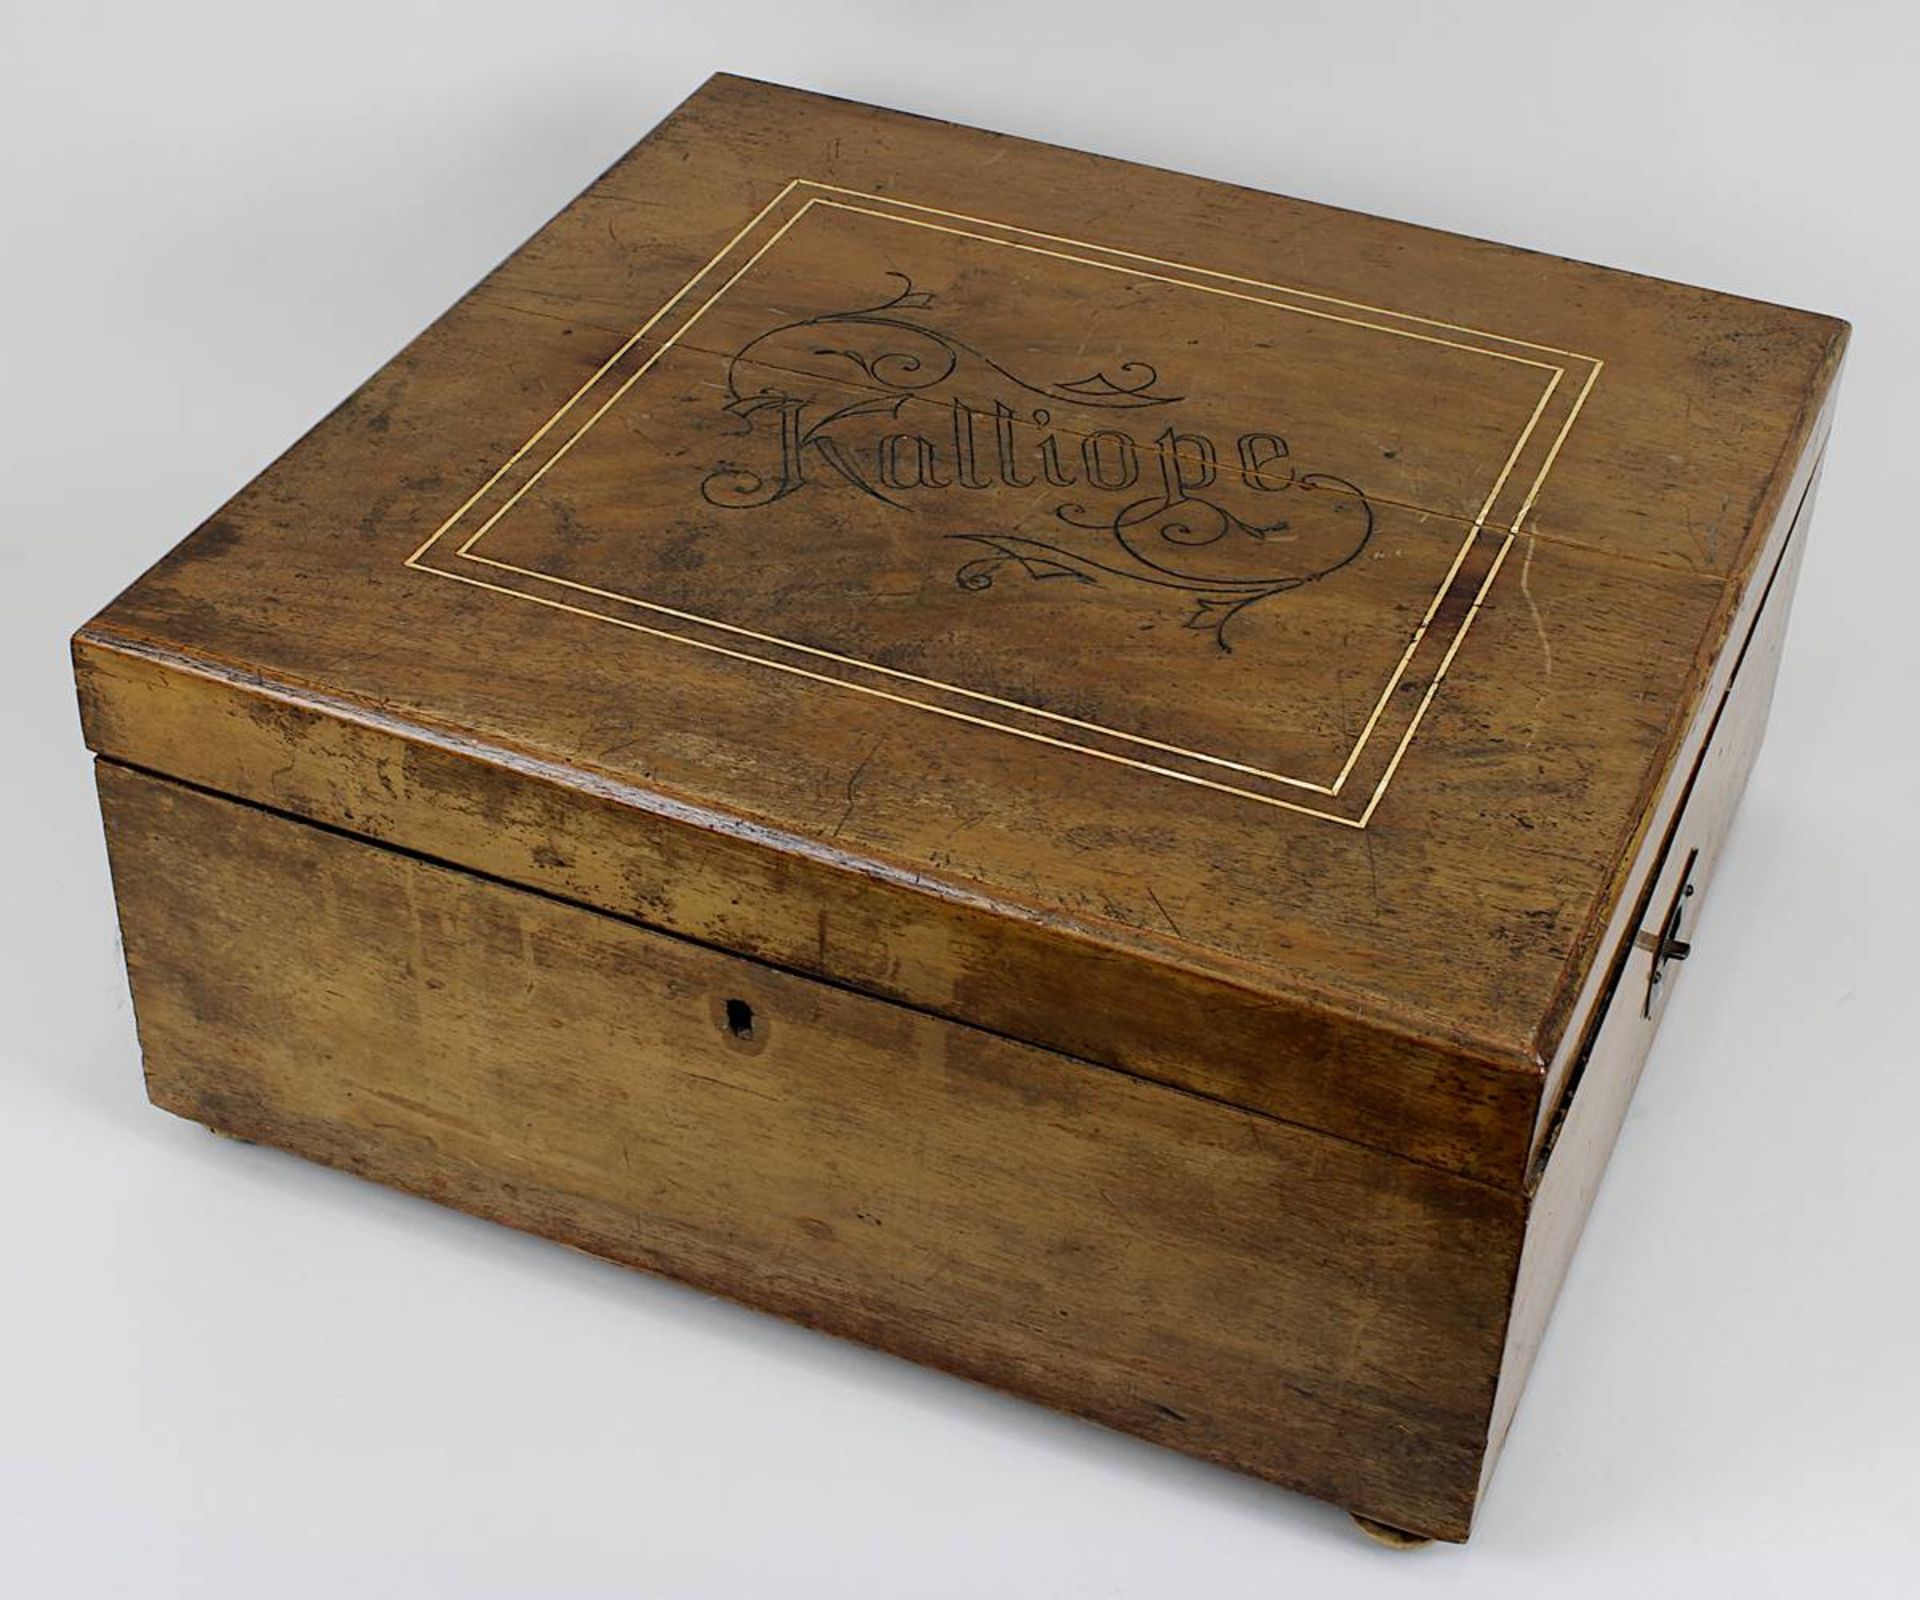 Kalliope Lochplattenspieler mit ca. 40 Platten, deutsch um 1890, auf Deckel beschriftet Kalliope, - Image 3 of 3